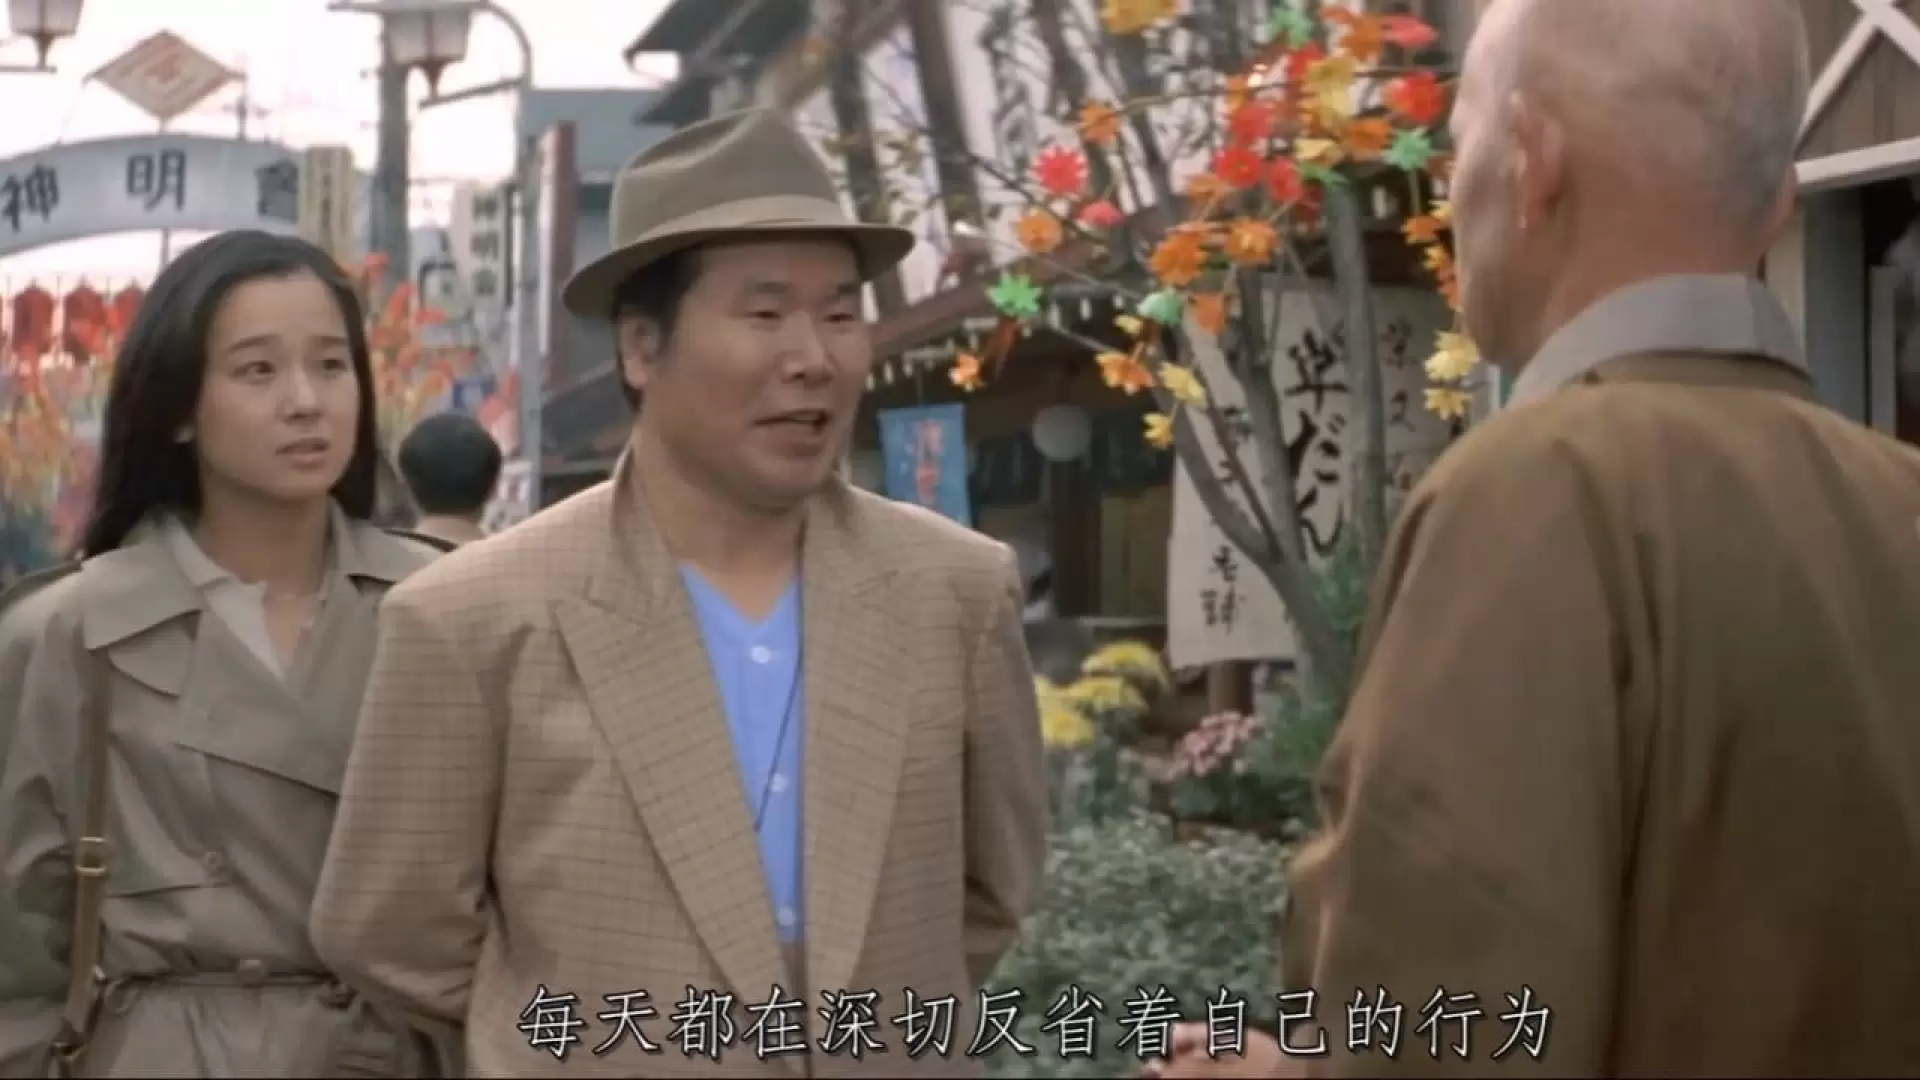 دانلود فیلم Otoko wa tsurai yo: Hana mo arashi mo Torajirô 1982